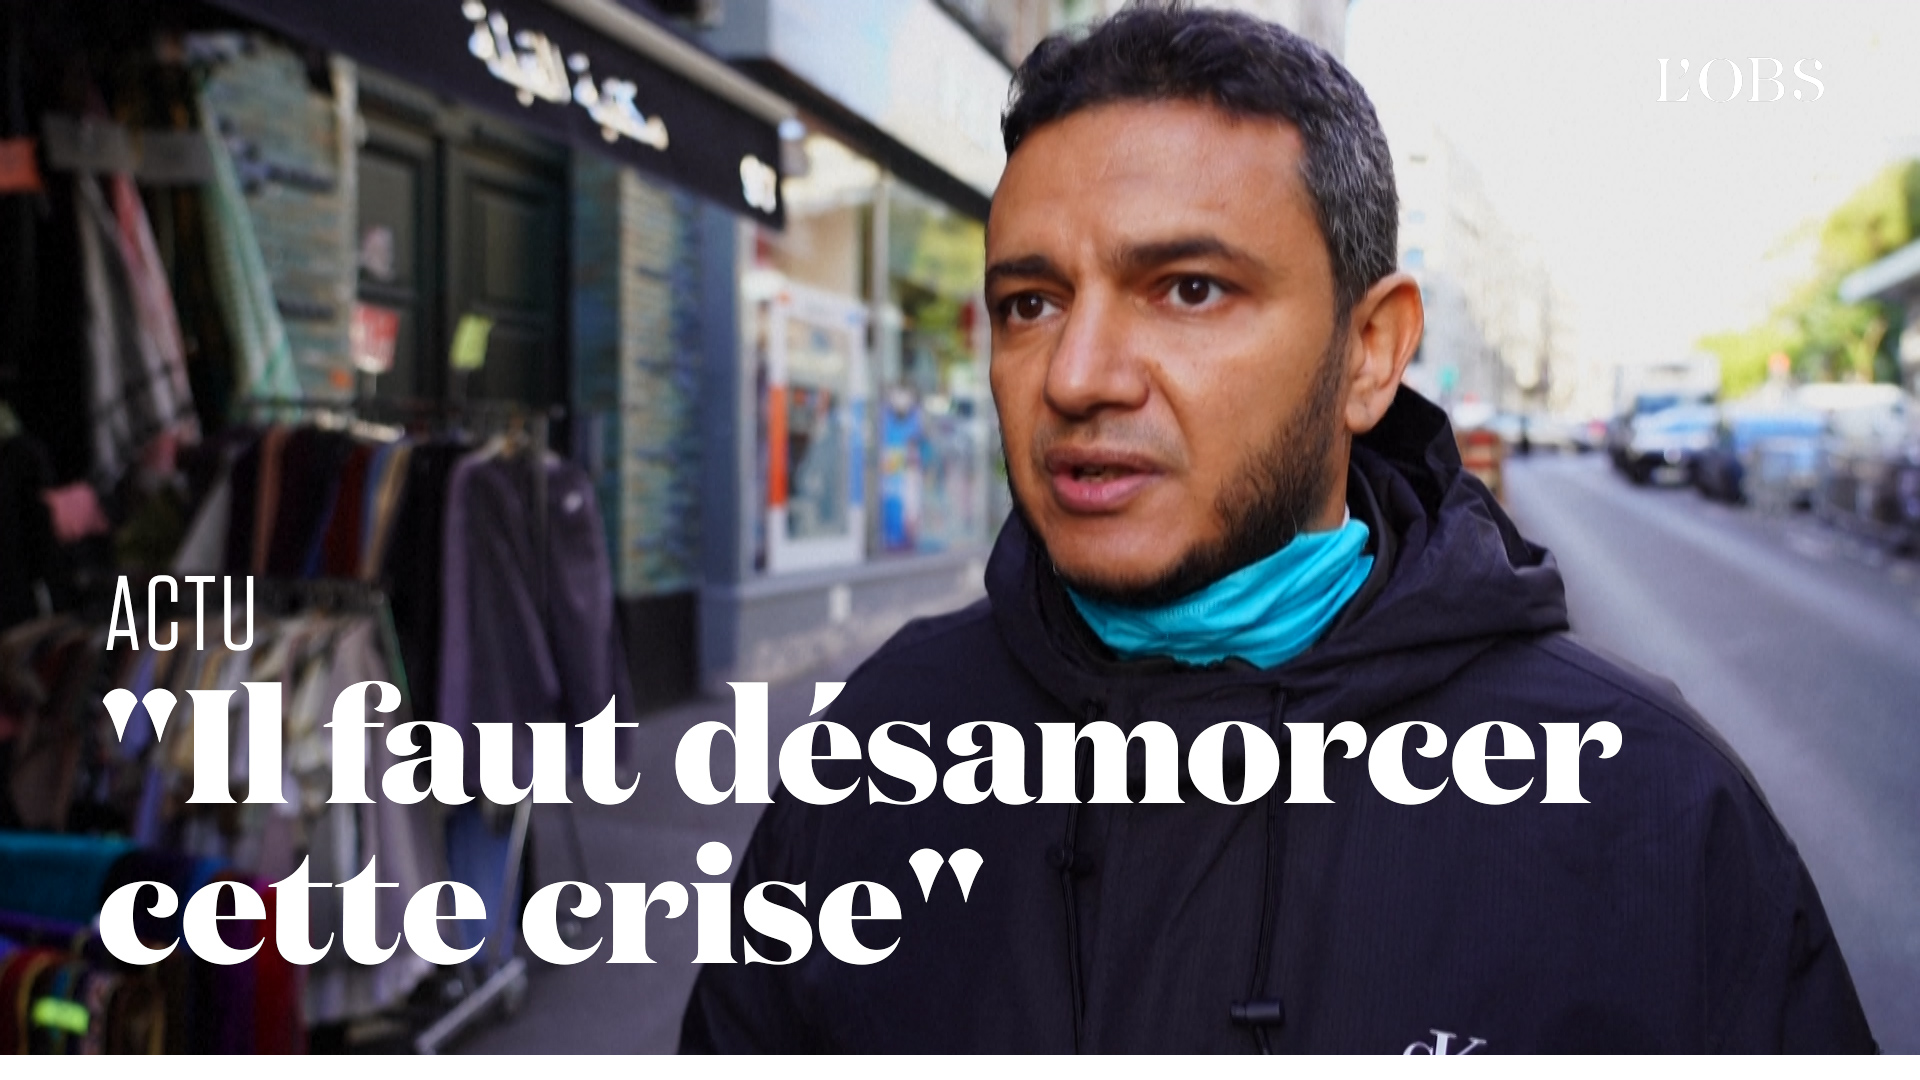 Face au boycott, des musulmans français dénoncent un "appel à diviser notre société"